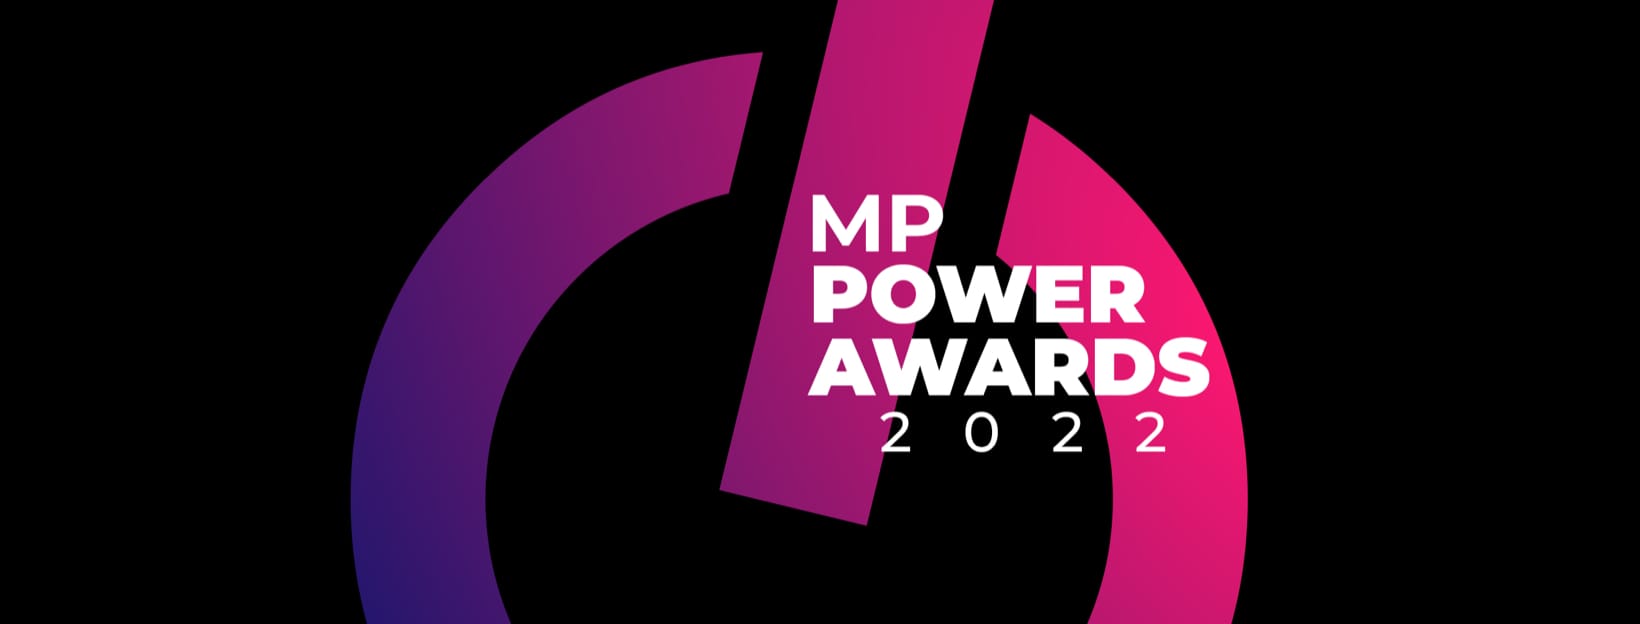 MP Power Awards 2022